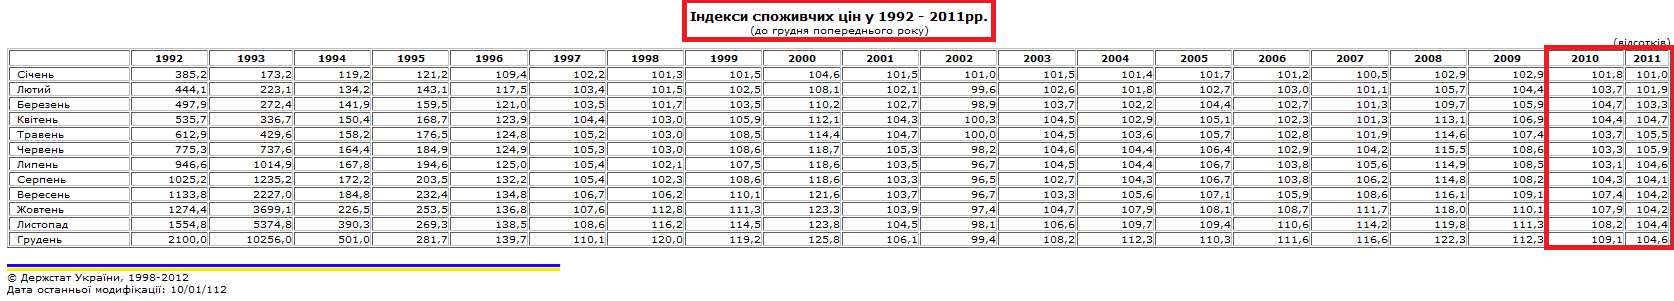 http://www.ukrstat.gov.ua/operativ/operativ2006/ct/cn_rik/isc/isc_u/isc_gr_u.htm